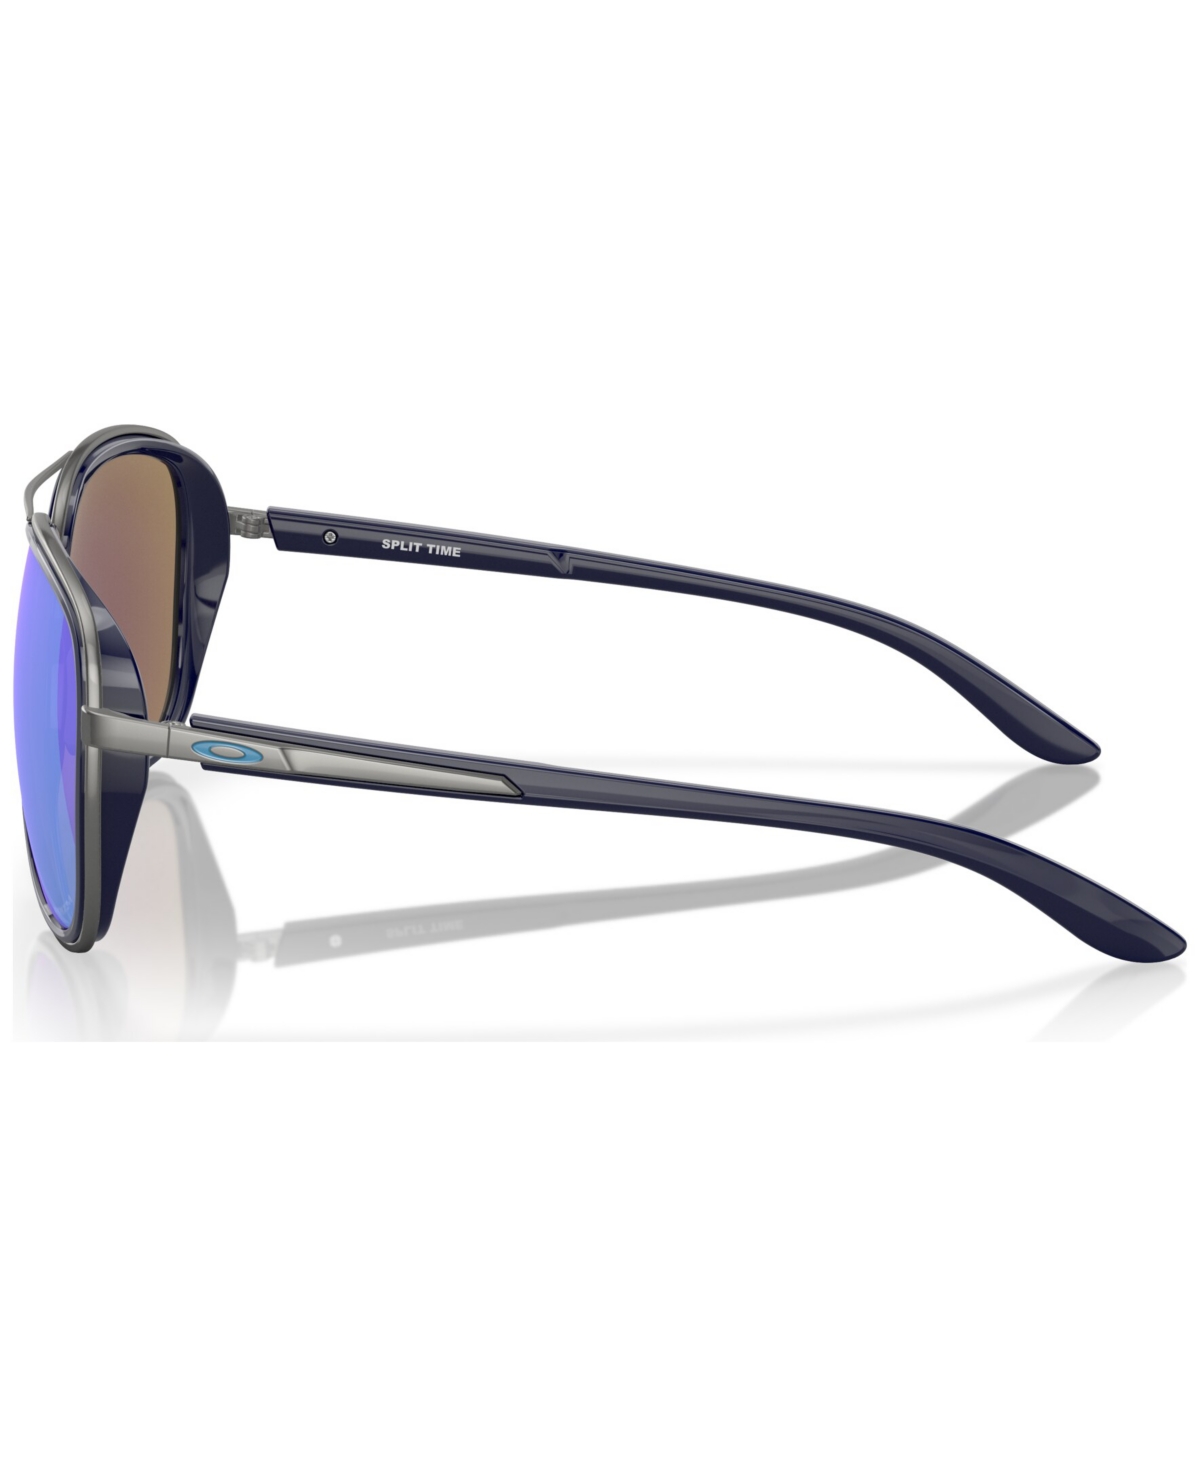 Shop Oakley Women's Polarized Sunglasses, Split Time In Navy